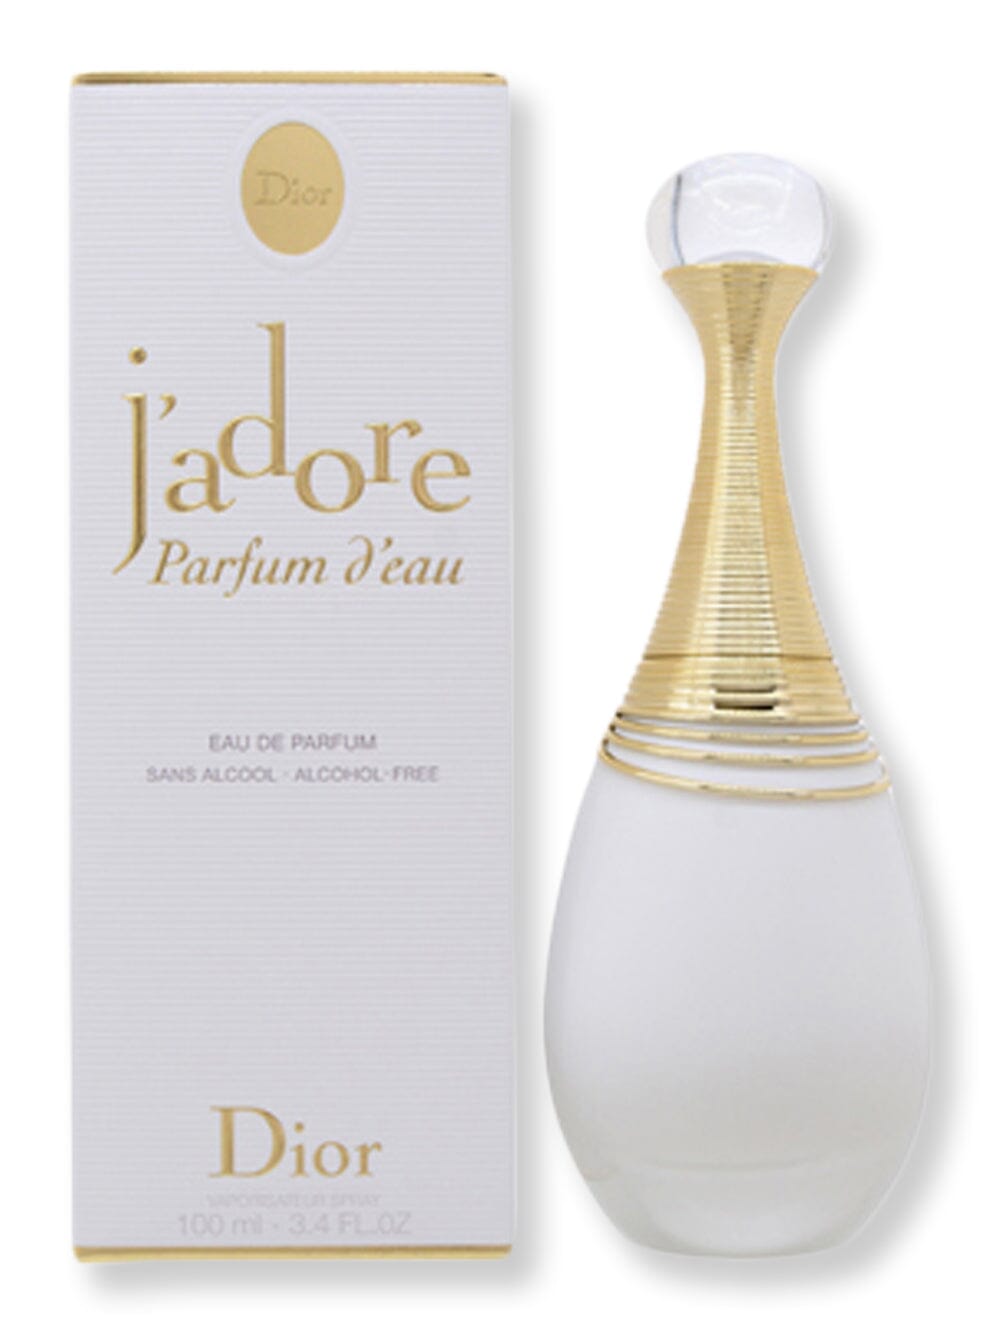 Dior Dior Jadore D'eau EDP Spray 3.3 oz100 ml Perfume 